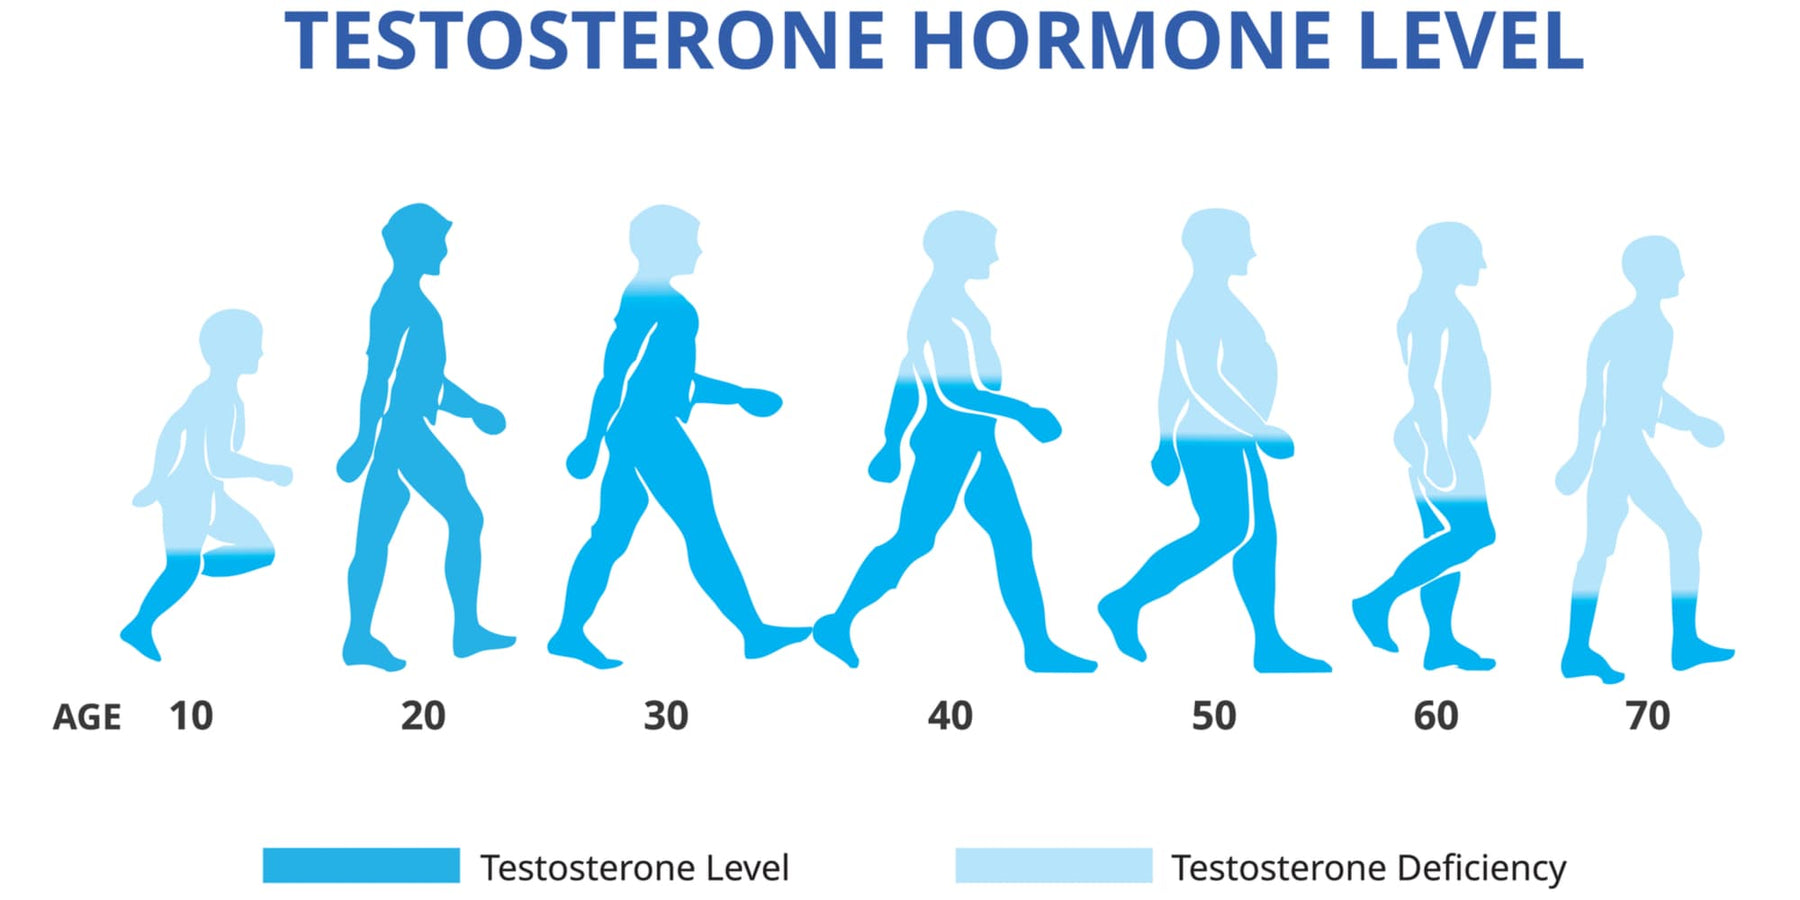 Méthodes naturelles pour stimuler la testostérone